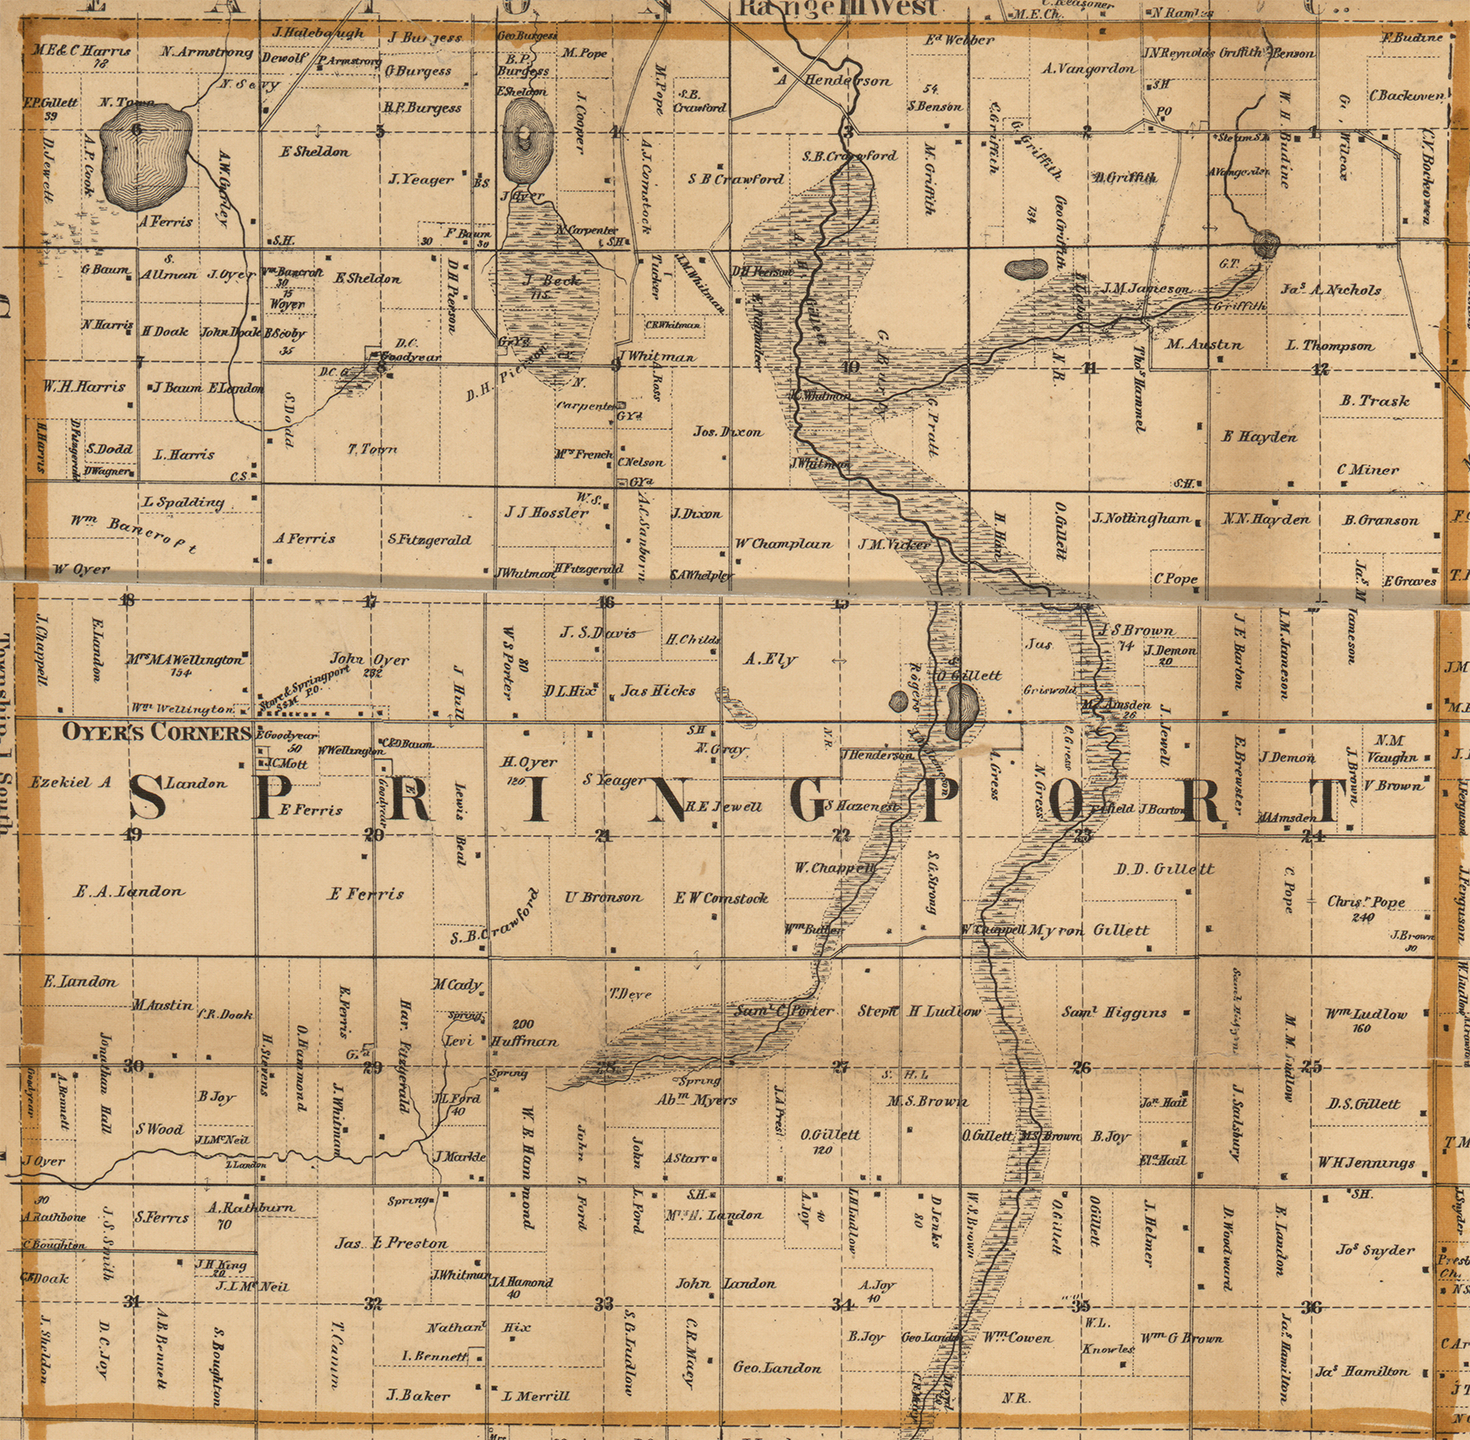 1858 Springport Township, Michigan landownership map